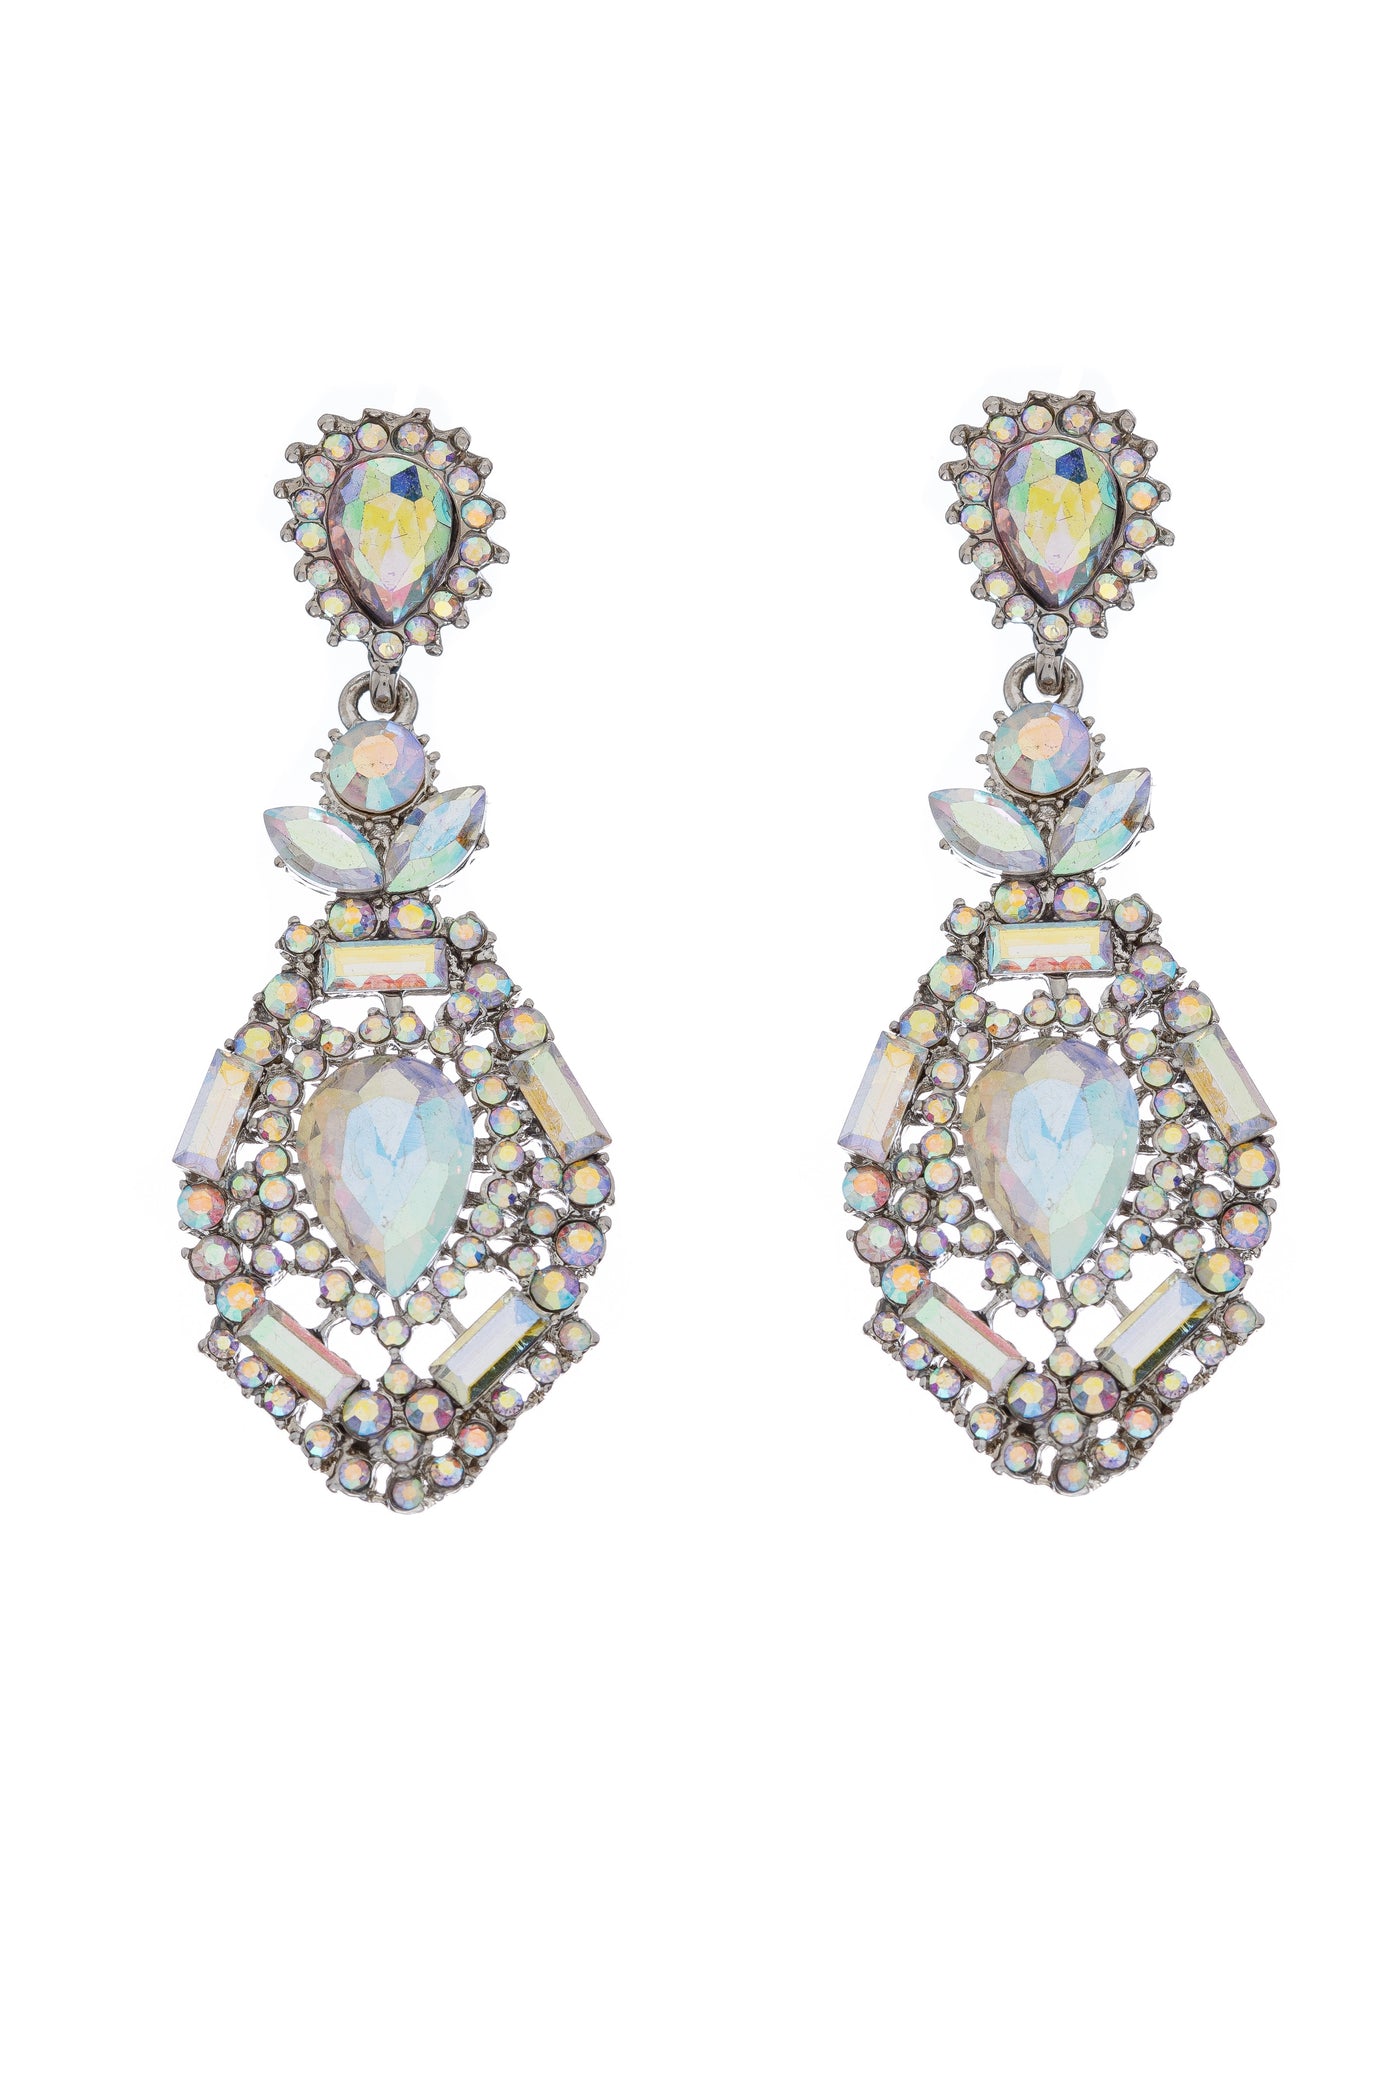 Gatsby Chandelier Earrings in Opal - SOLD OUT